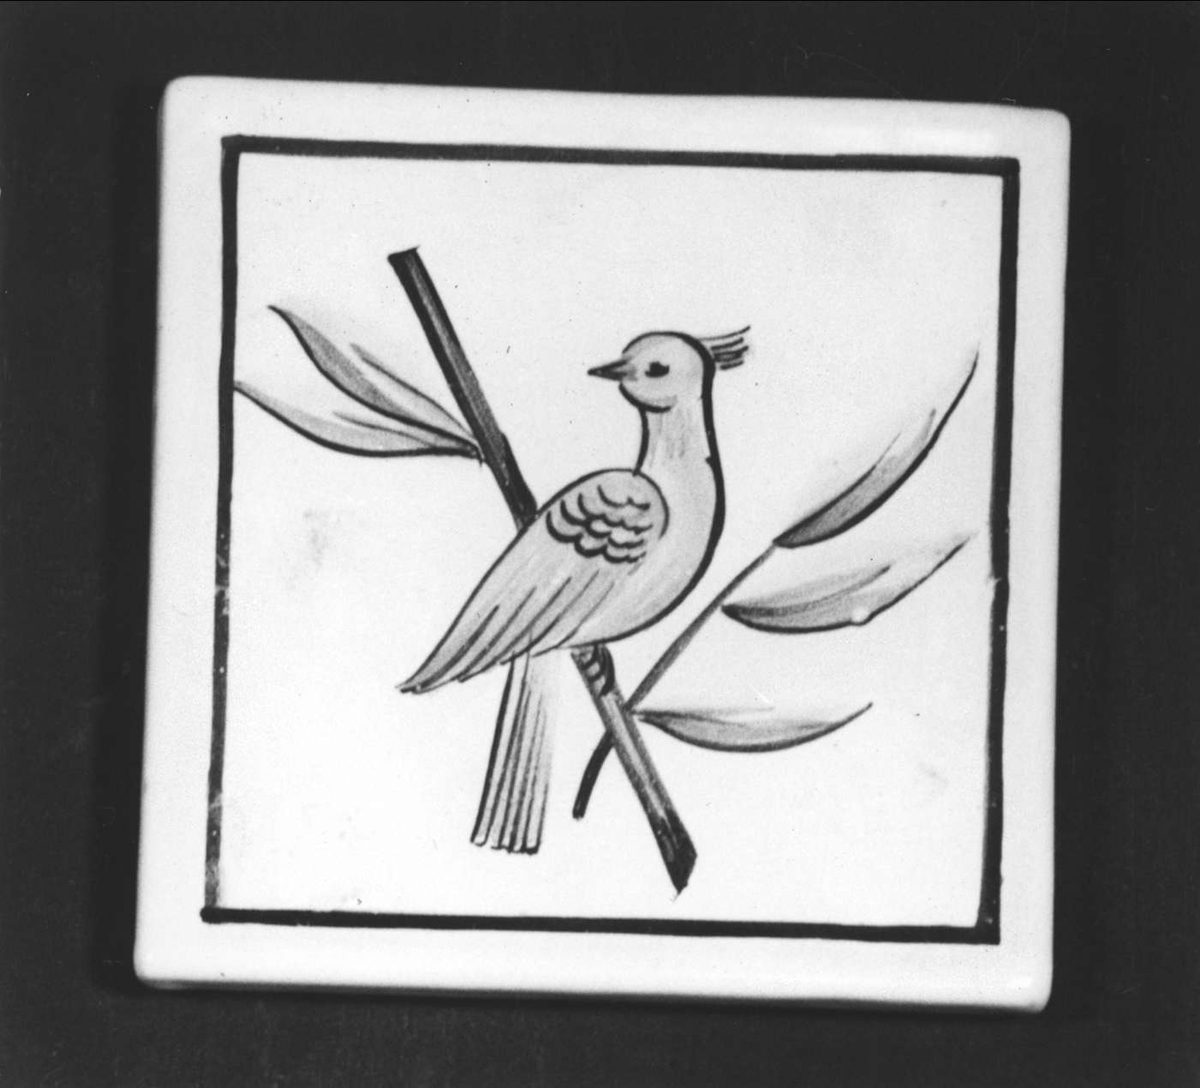 Vitglaserad med målad dekor i gult, svart och grönt föreställande en fågel på en kvist. Stämplad: S:T ERIK UPSALA. Målat i brunt : P 110.

